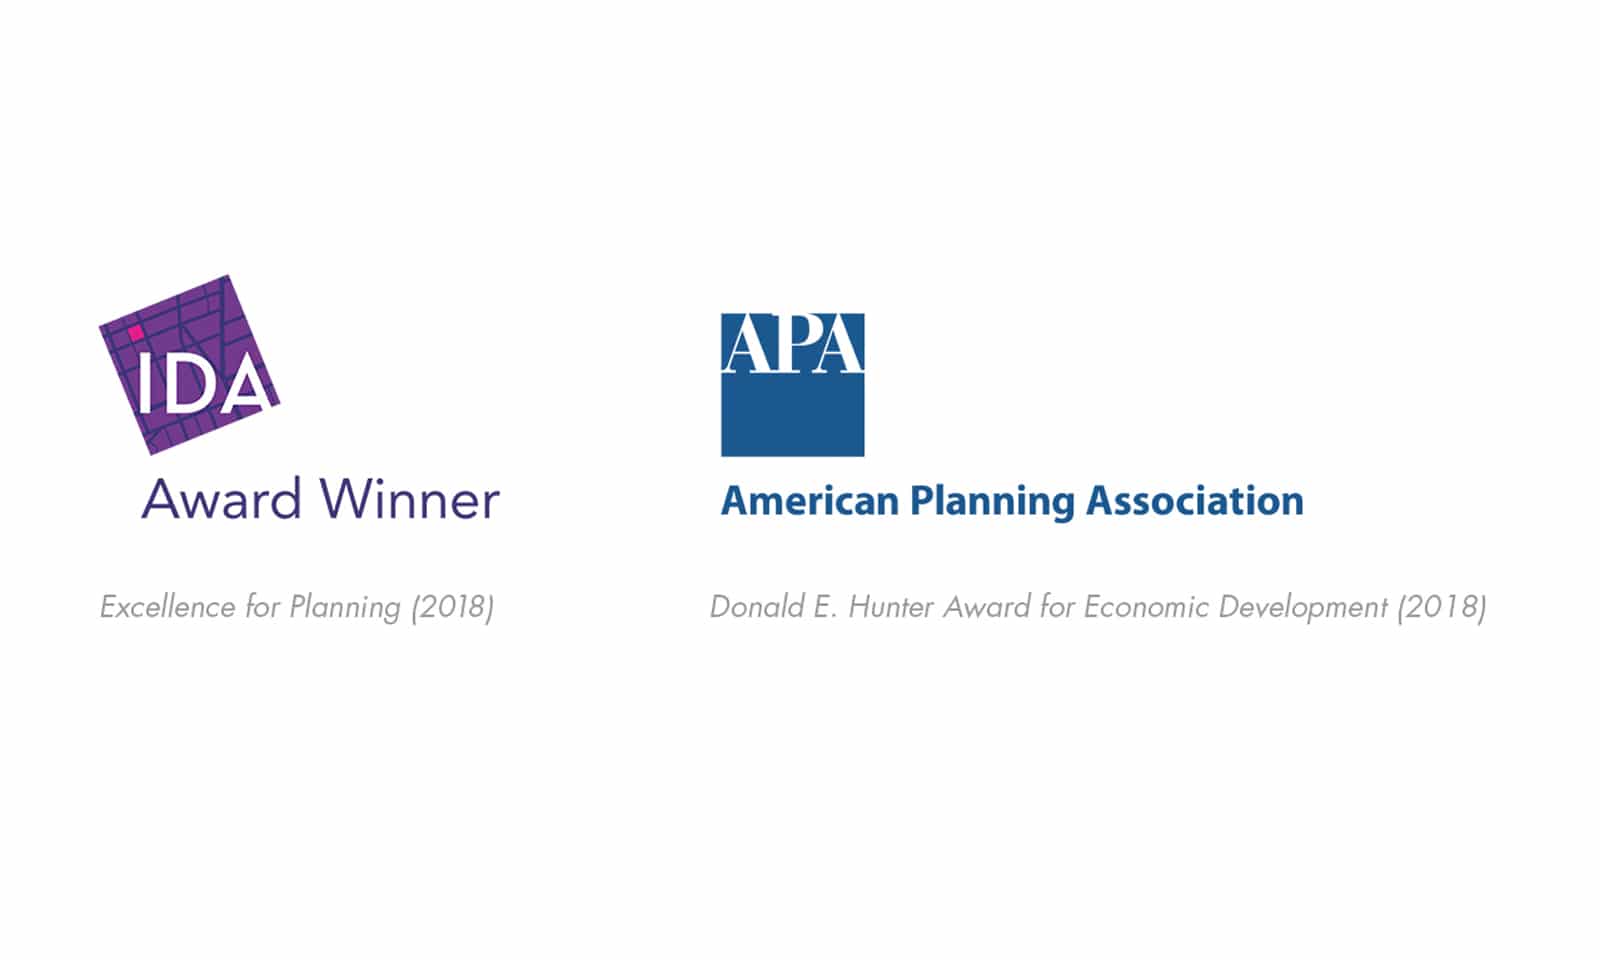 IDA and APA award badges